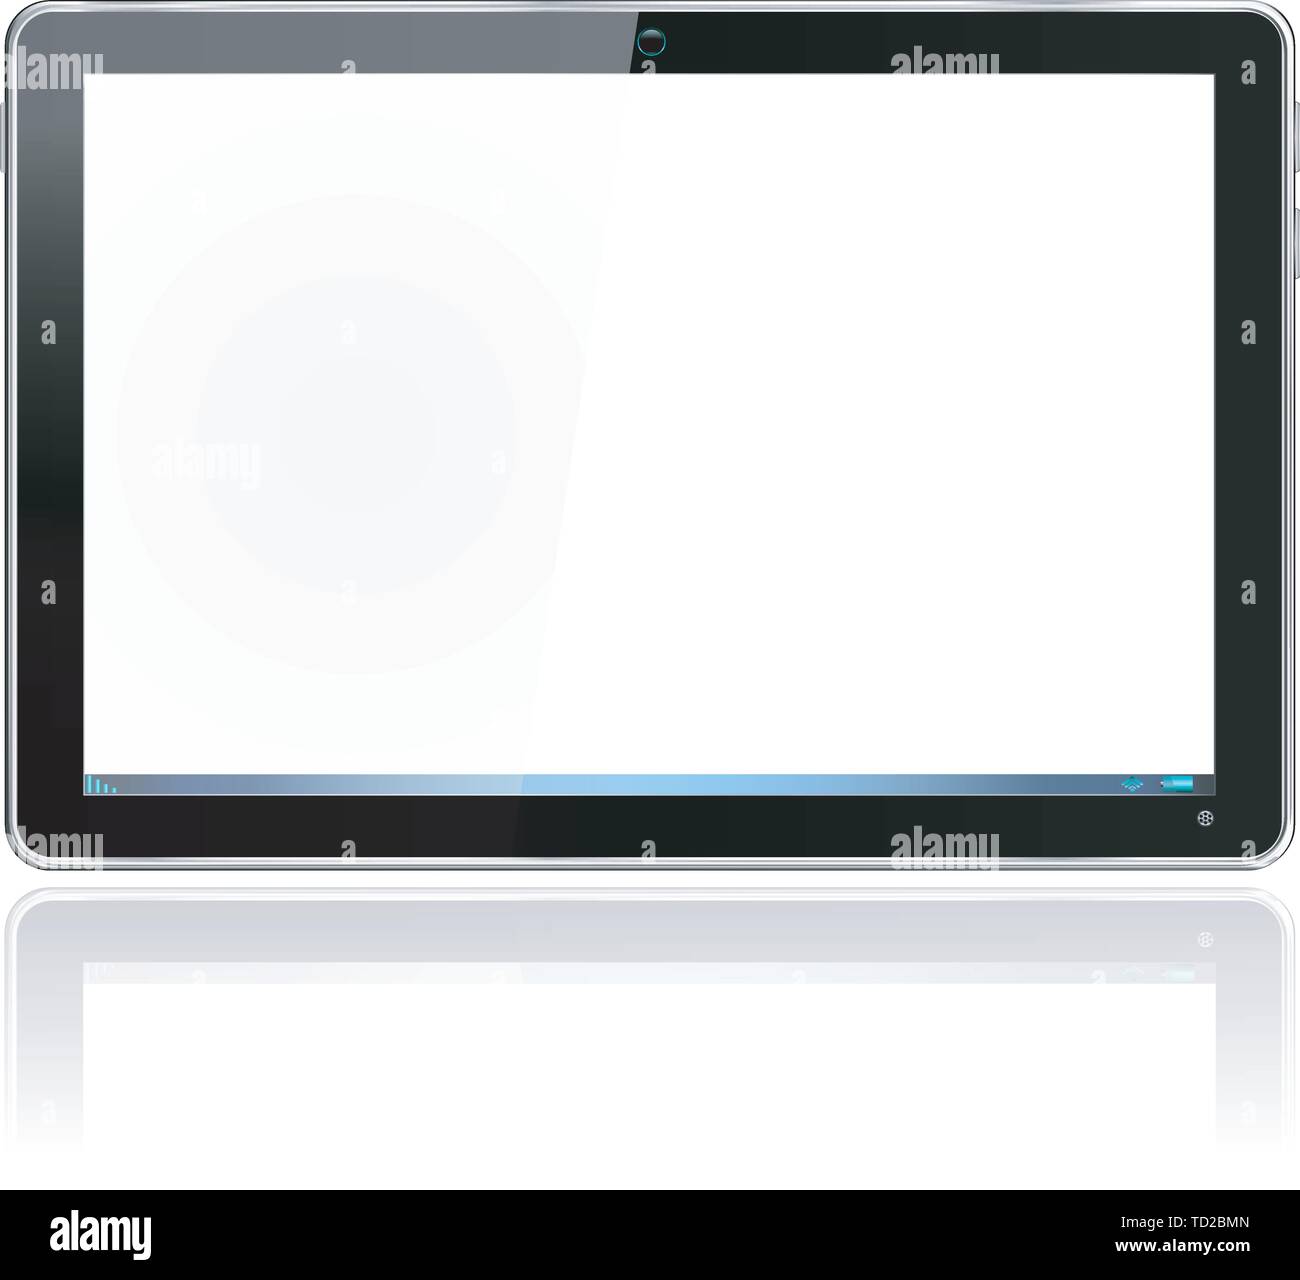 Realistische computer Tablet in Schwarz-Vektor gruppiert und mit einem separaten Layer zu Ihrem eigenen Bild einfach hinzufügen zu Bildschirm Layered Stock Vektor